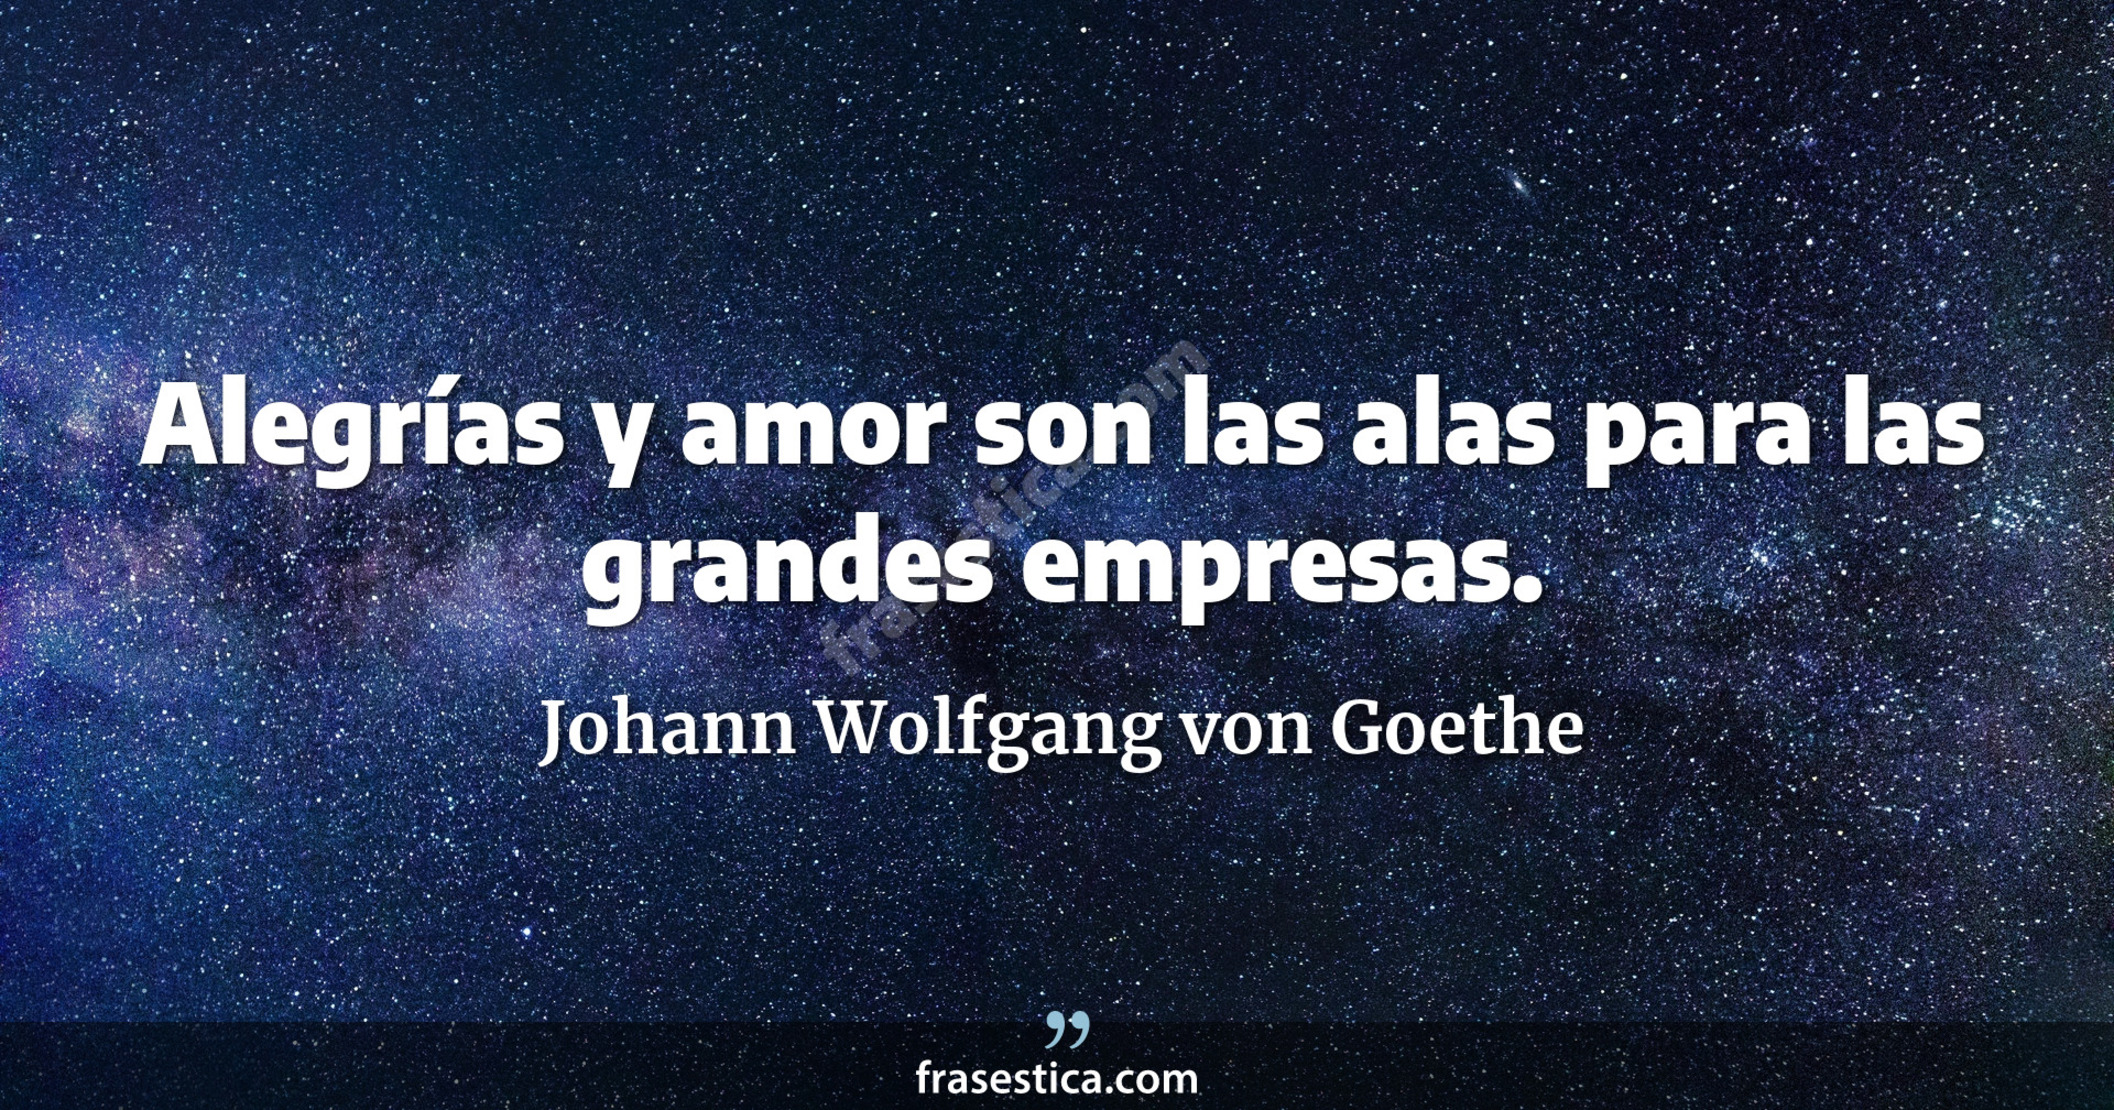 Alegrías y amor son las alas para las grandes empresas. - Johann Wolfgang von Goethe